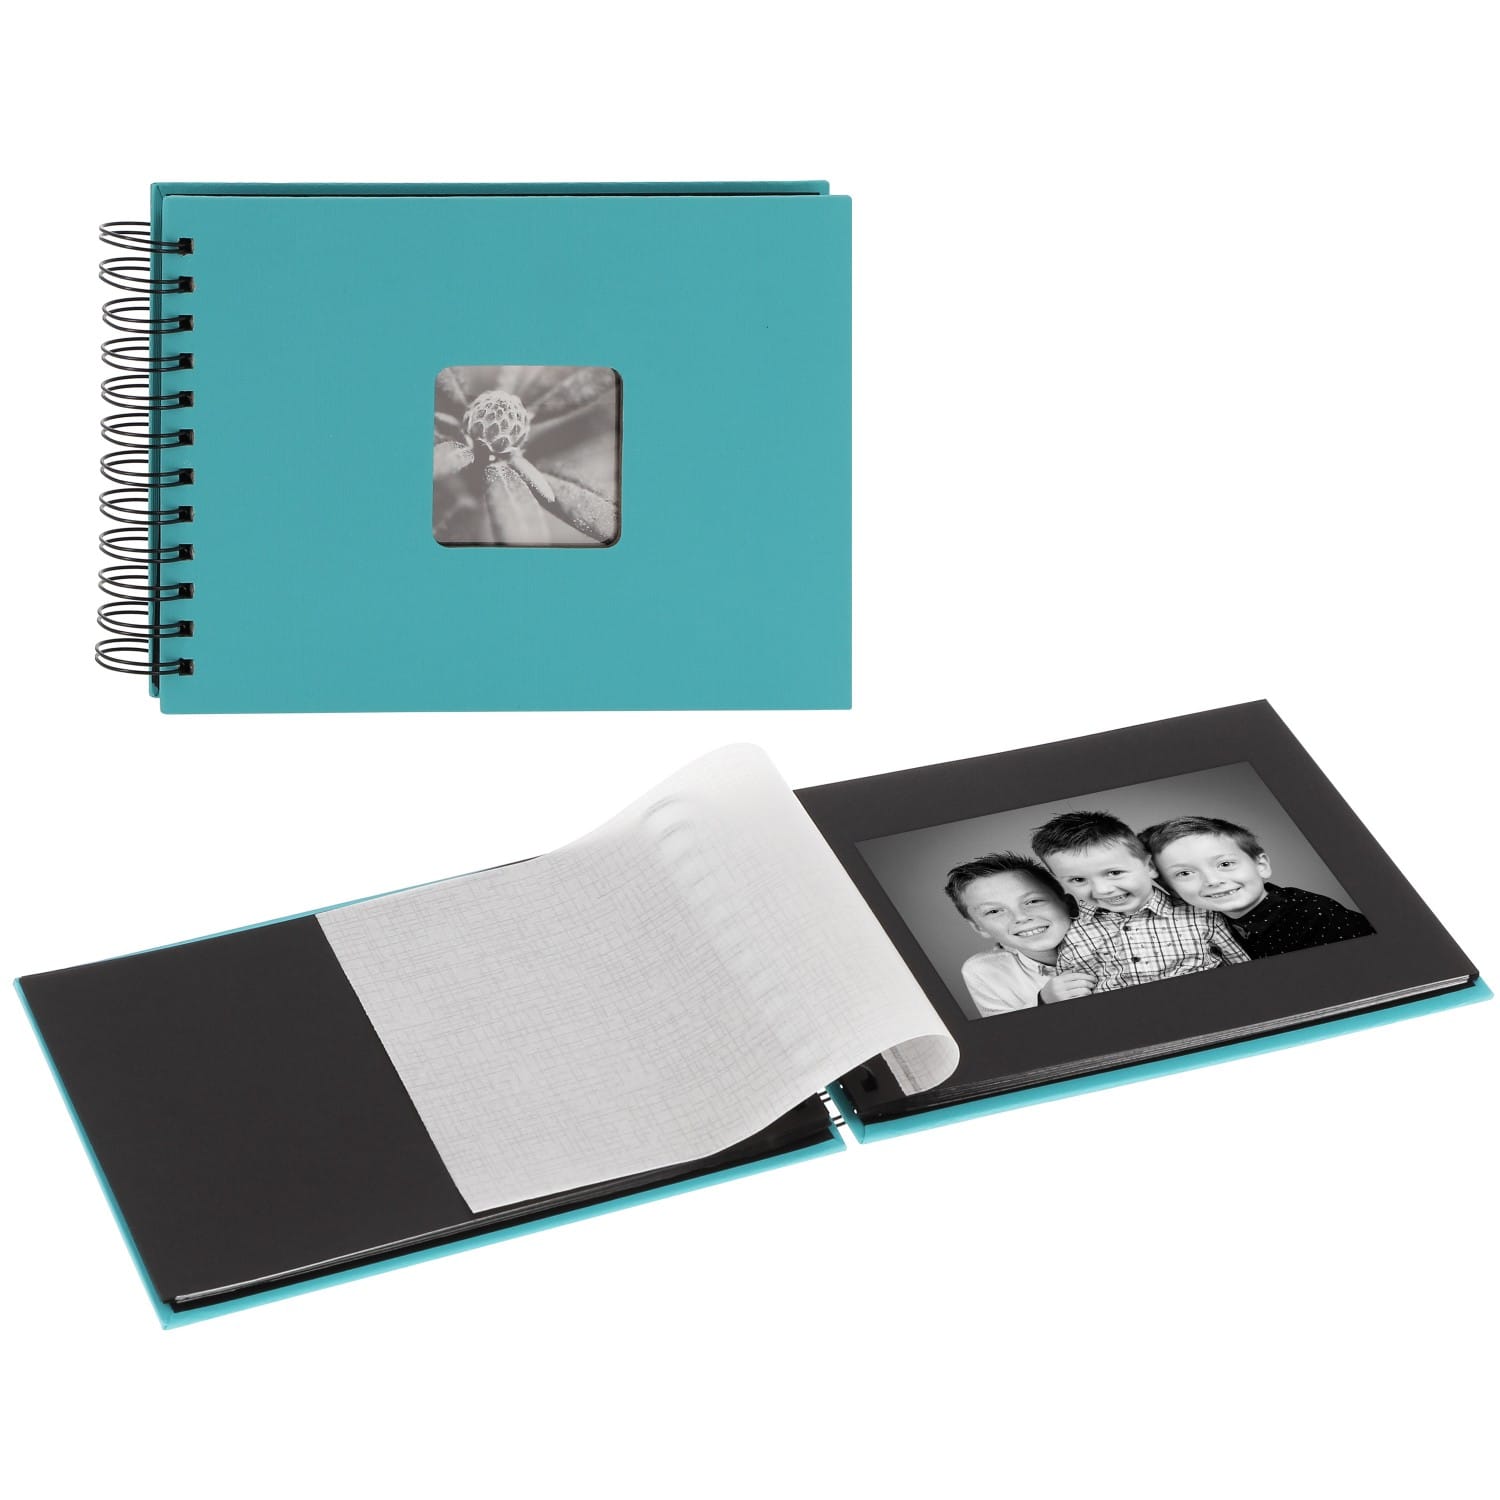 Mini album HAMA traditionnel FINE ART SPIRAL - 50 pages noires + feuillets  cristal - 50 photos - Couverture Bleue Turquoise 24x17cm + fenêtre